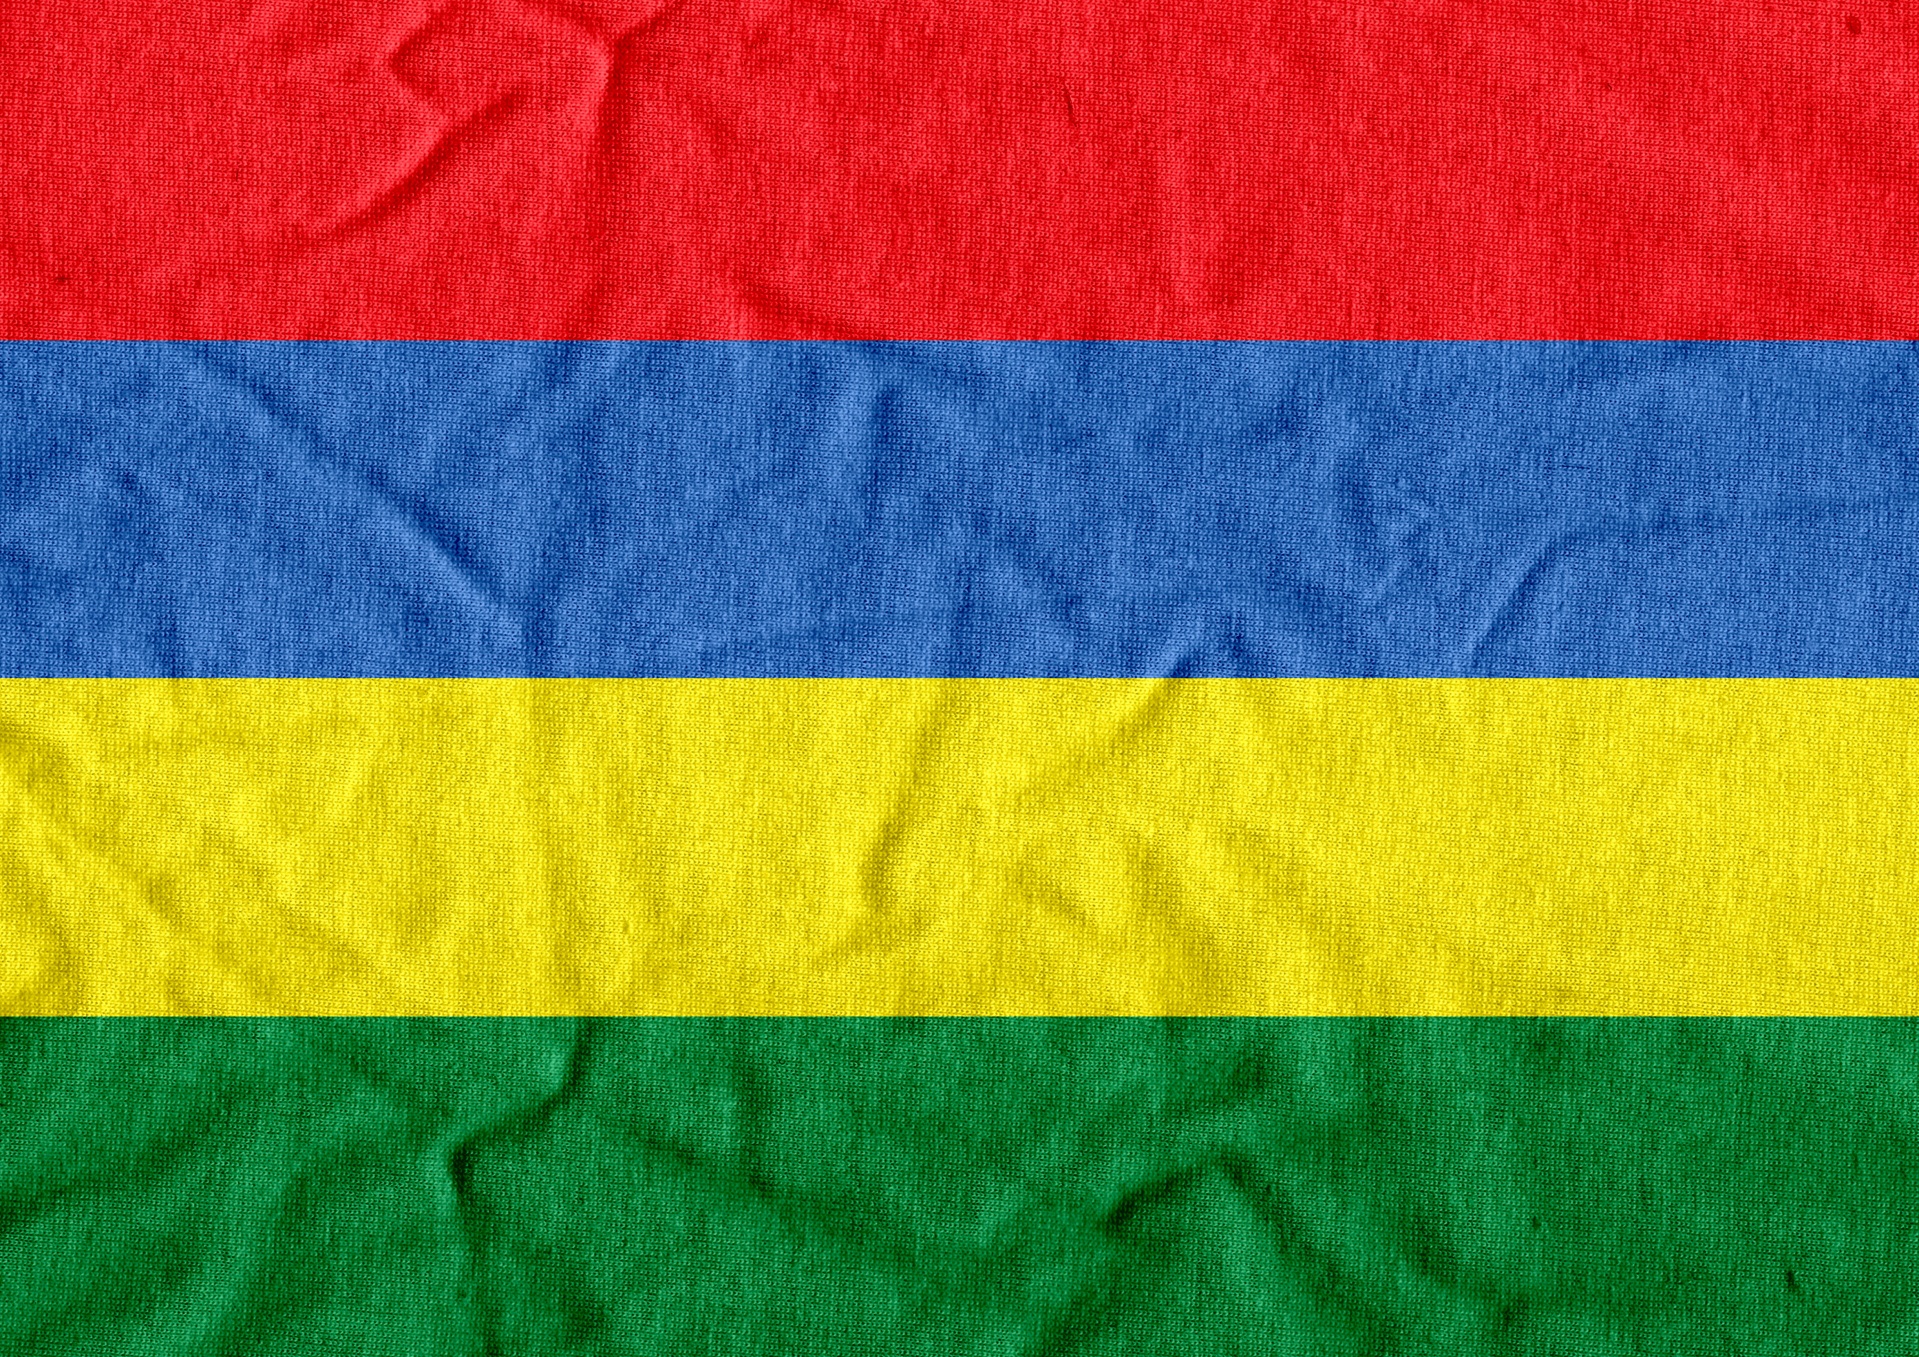 Flag Of Mauritius Themes Idea Design